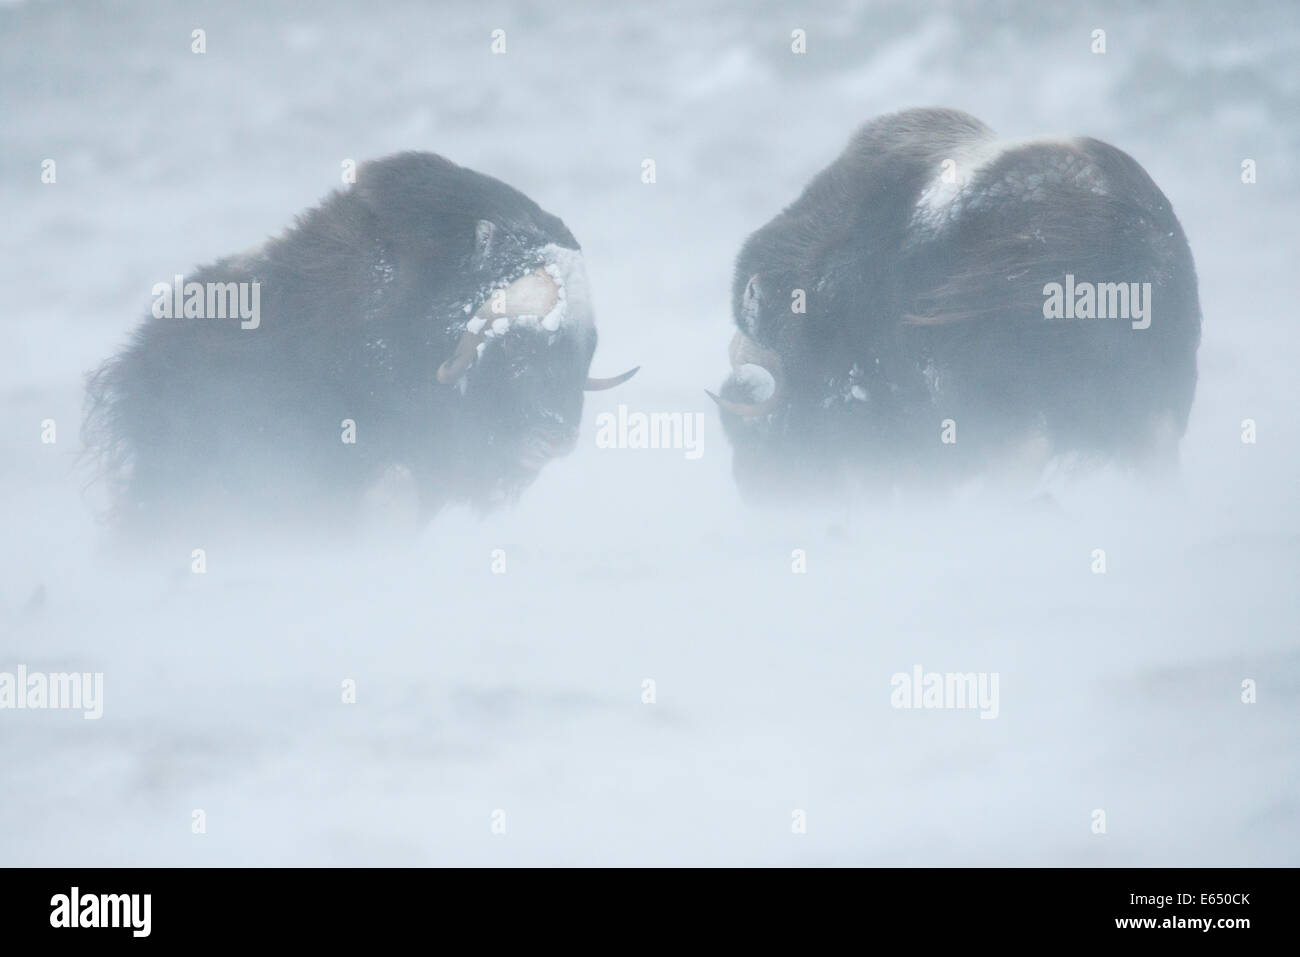 Deux Bœufs musqués ou boeuf musqué (Ovibos moschatus), des combats durant une tempête de neige, le Parc National de Dovrefjell Sunndalsfjella, Norvège Banque D'Images